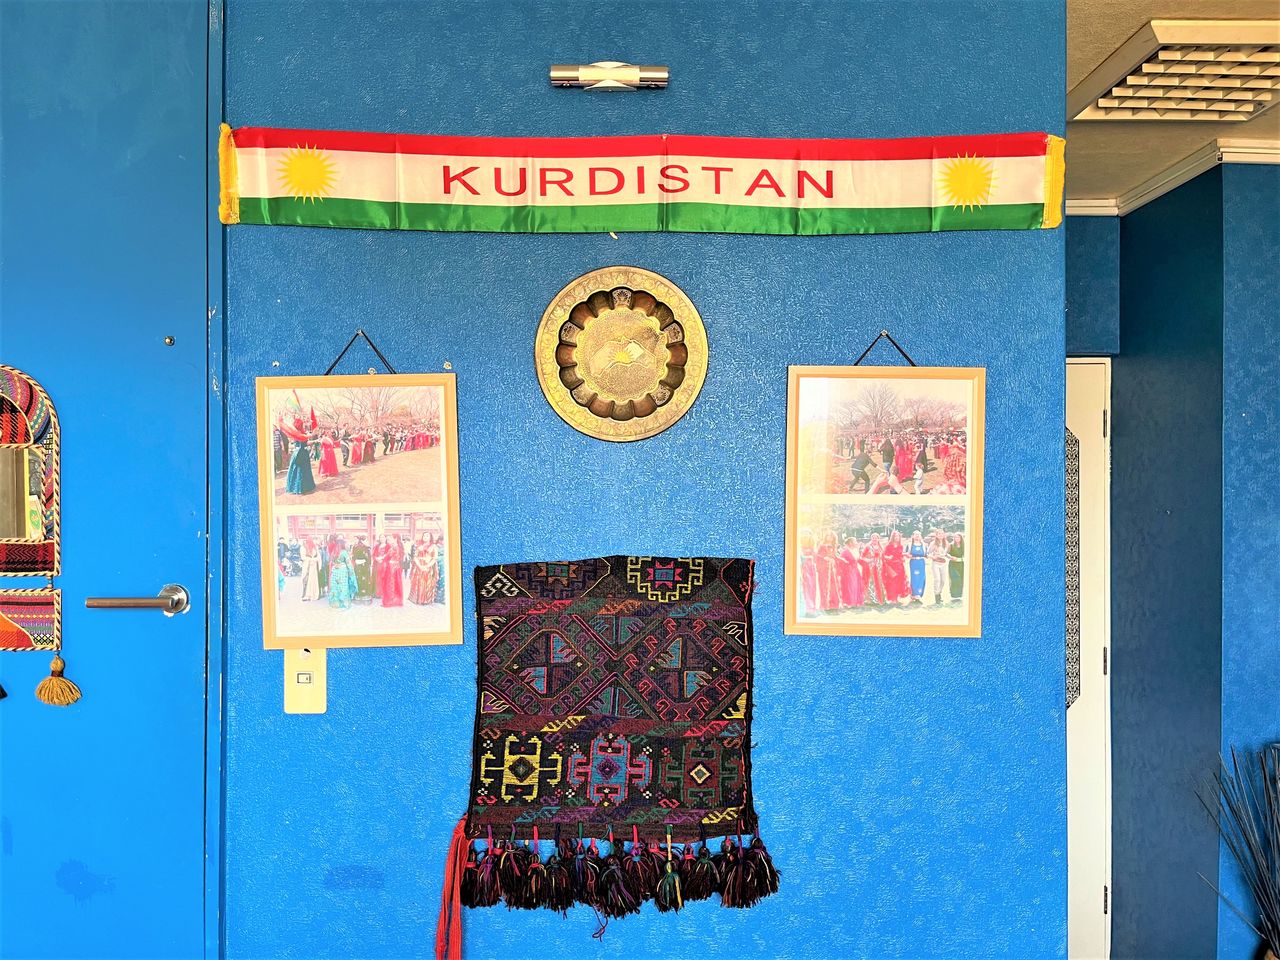 يقدم المطعم أيضًا عروضاً للثقافة الكردية. العلم ذو الخطوط الحمراء والخضراء والبيضاء عليها صورة الشمس هو علم كردستان.